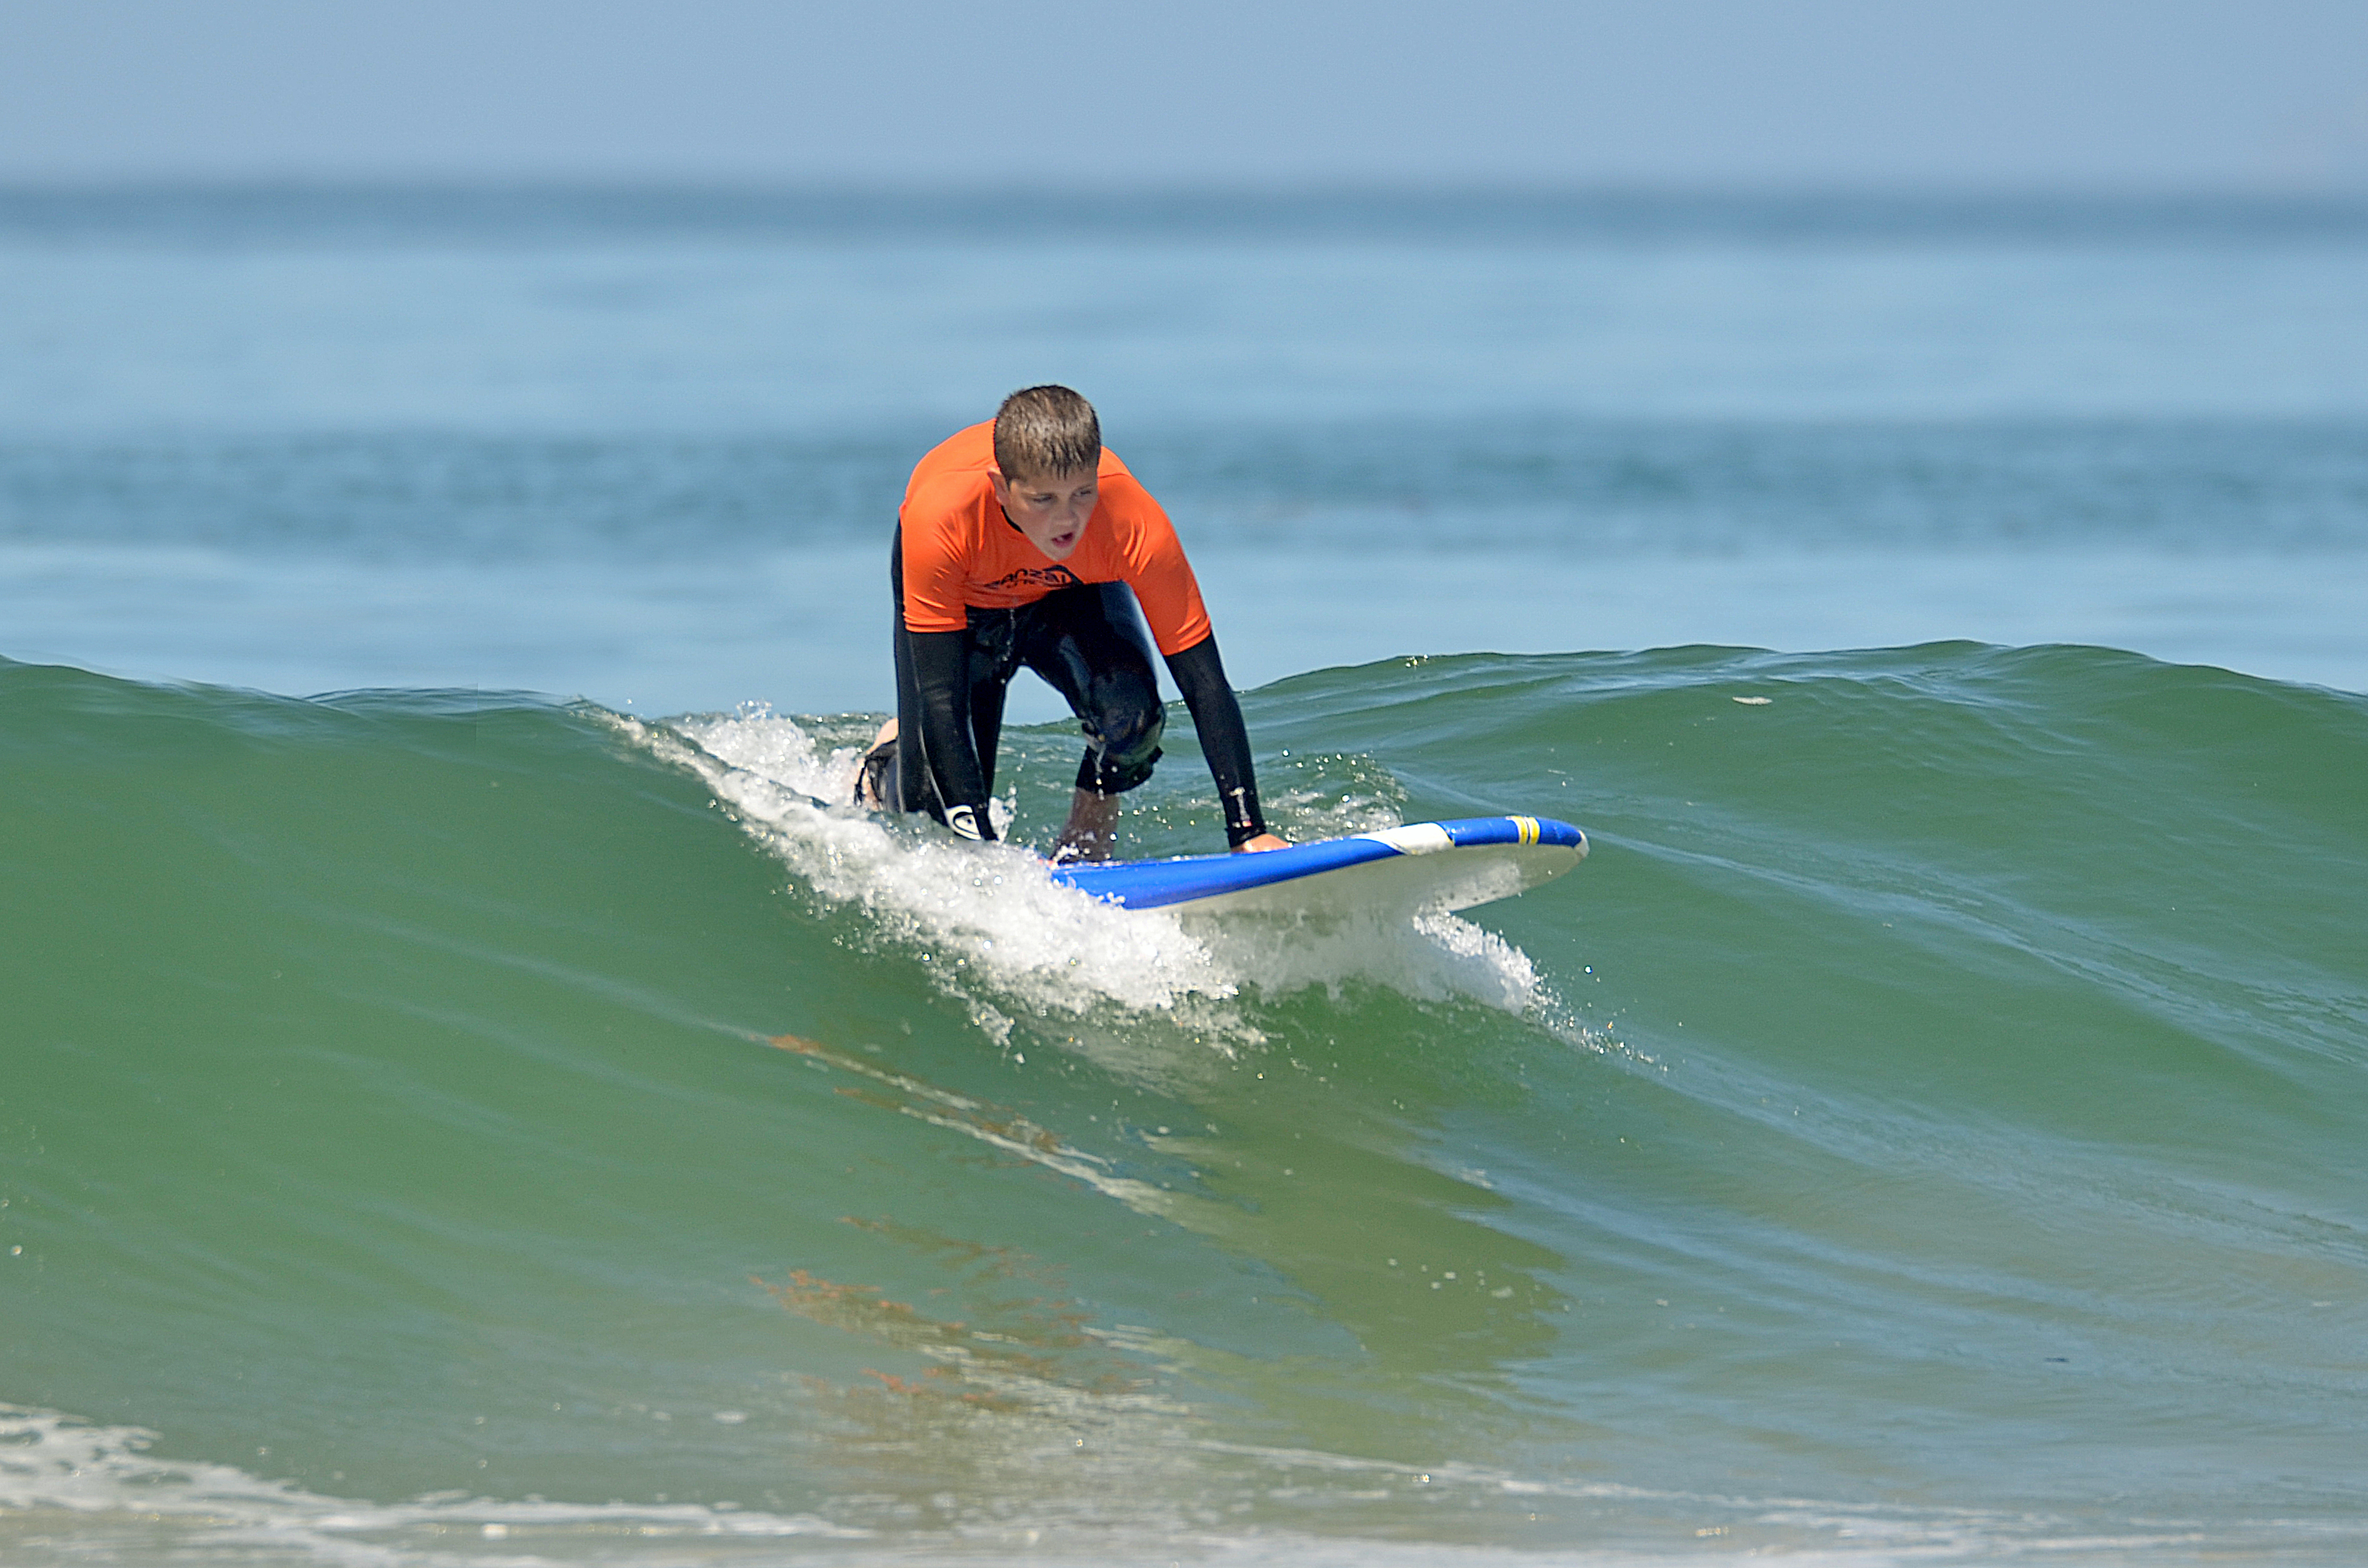 beginner in surfer lingo